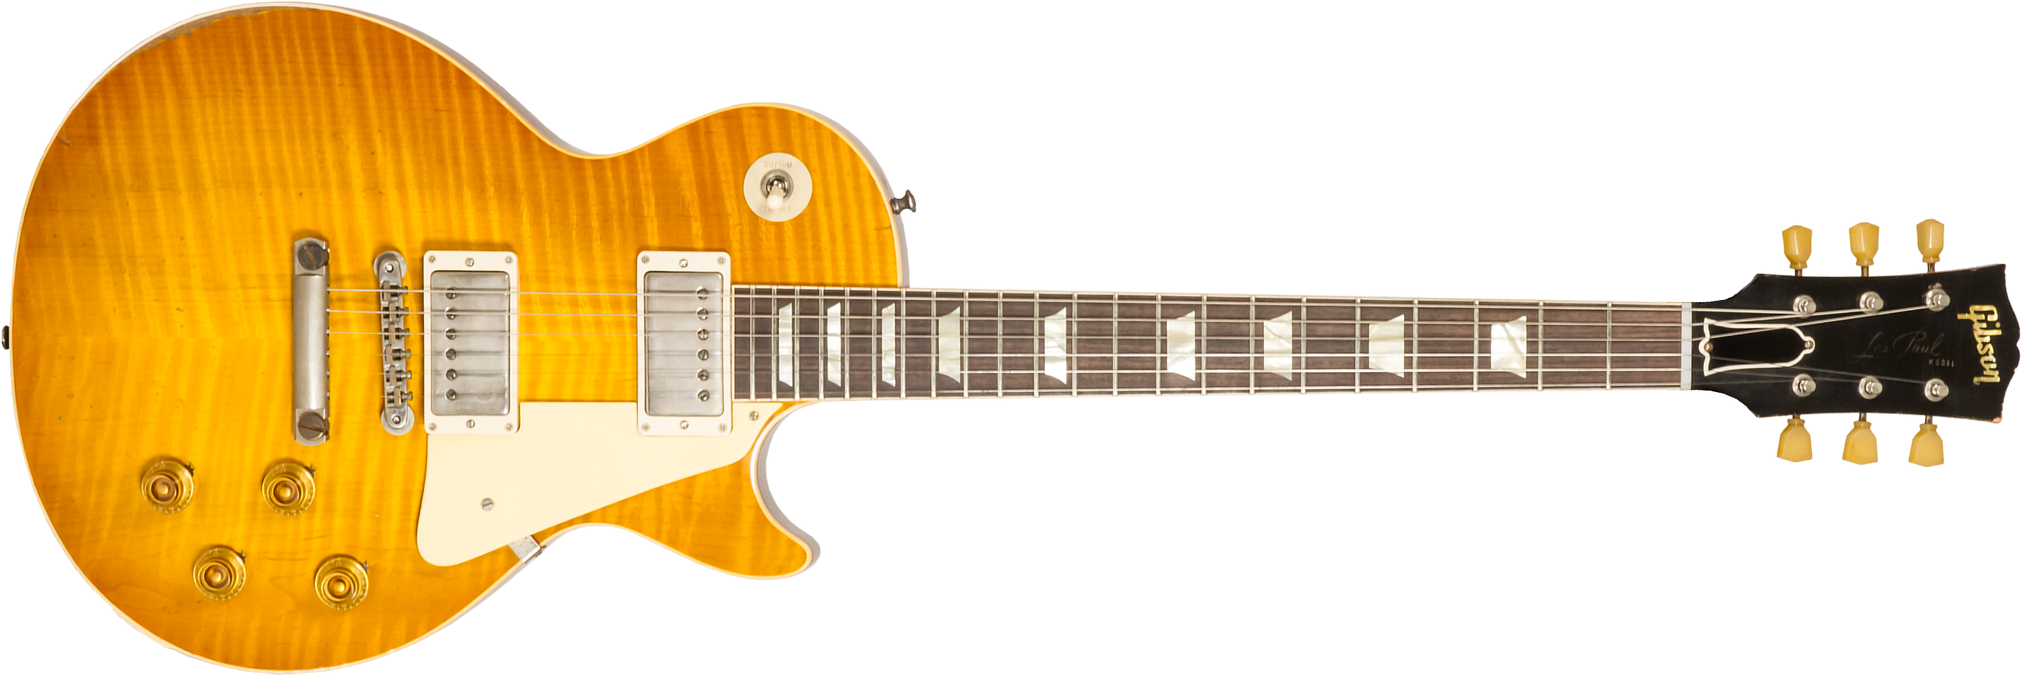 Gibson Custom Shop M2m Les Paul Standard 1959 Reissue 2h Ht Rw #932980 - Murphy Lab Heavy Aged Dirty Lemon Fade - Guitare Électrique Single Cut - Main